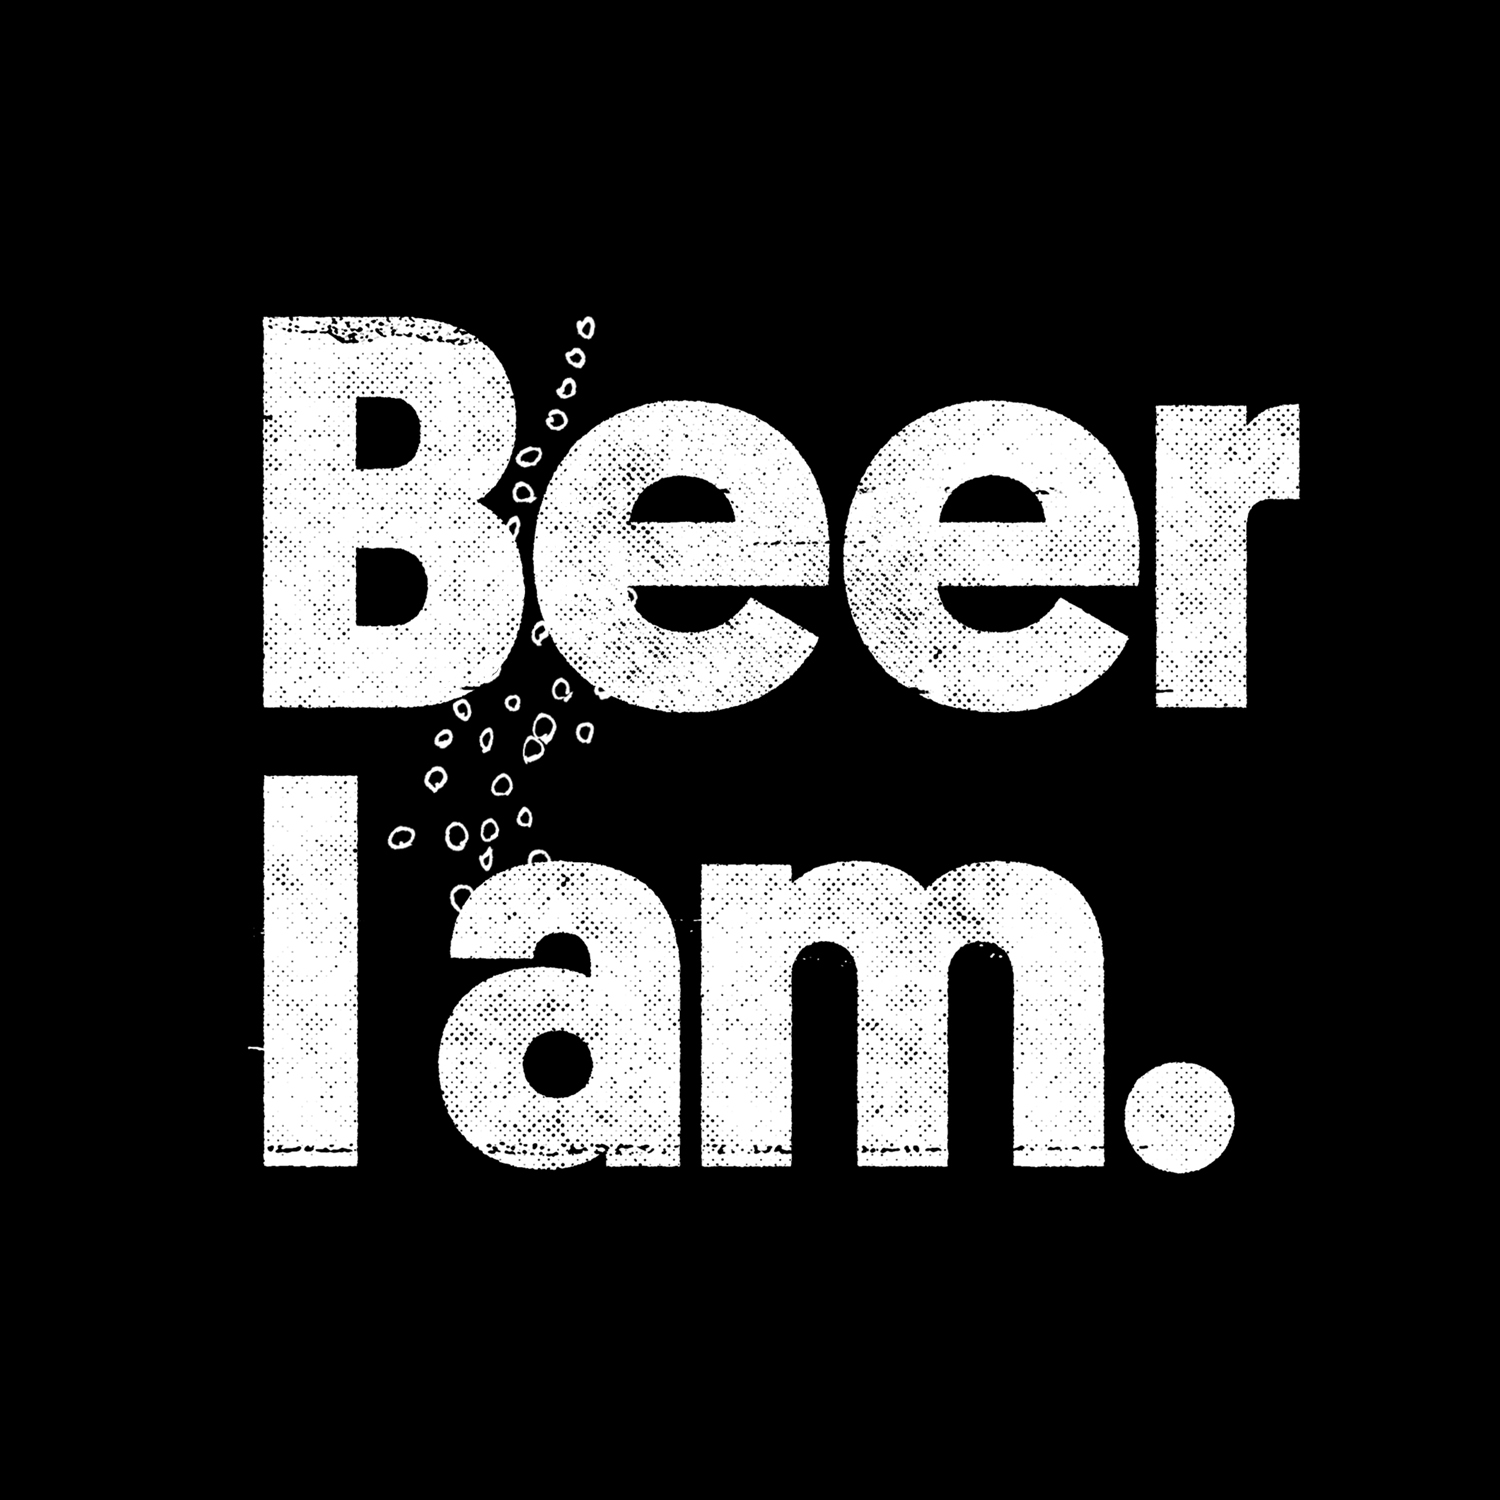 Beer I am ist unser Fördermitglied